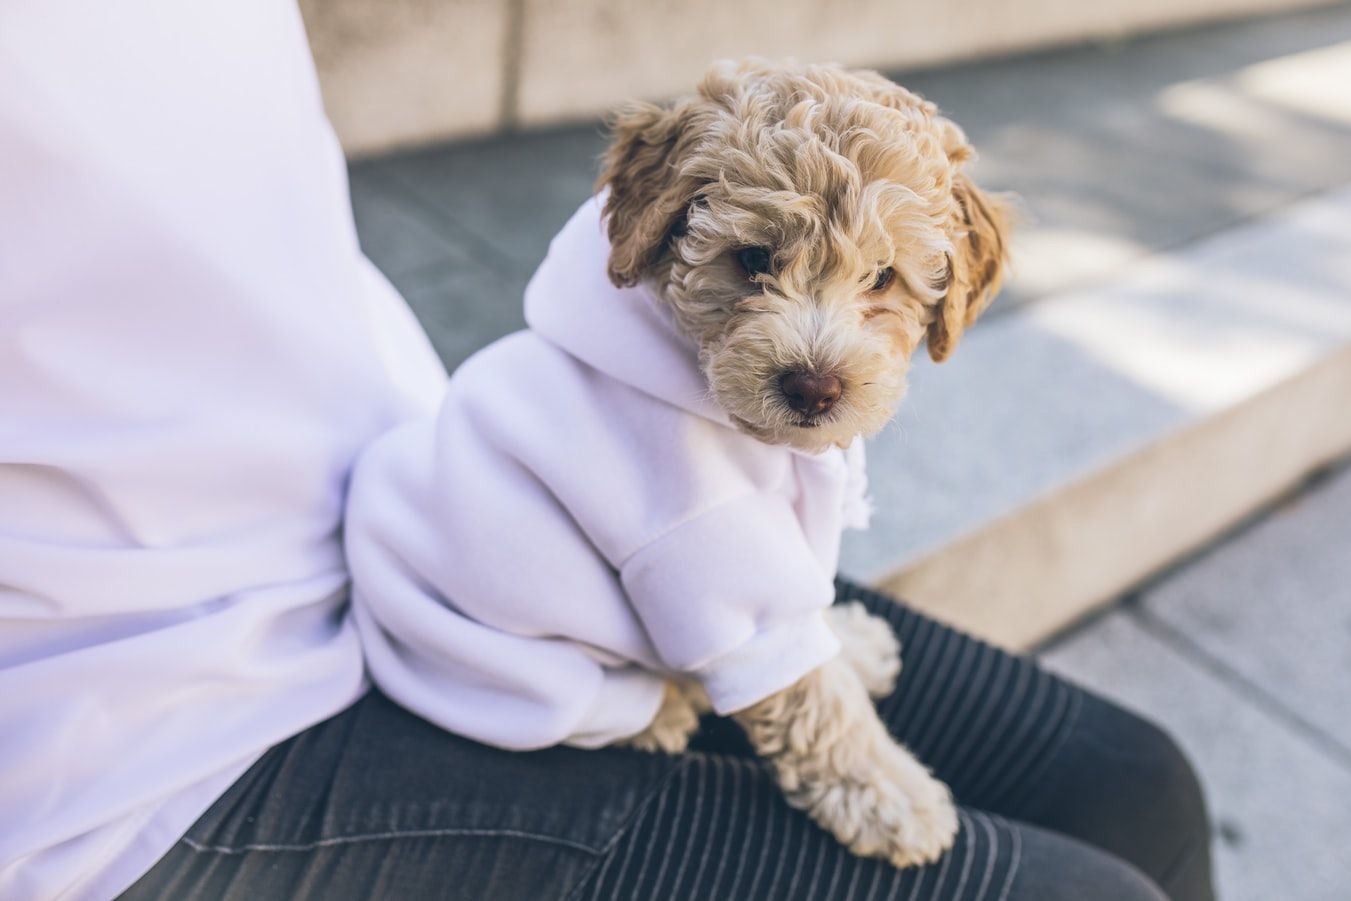 Pet fashion: 5 stylish ways to dress up your dog